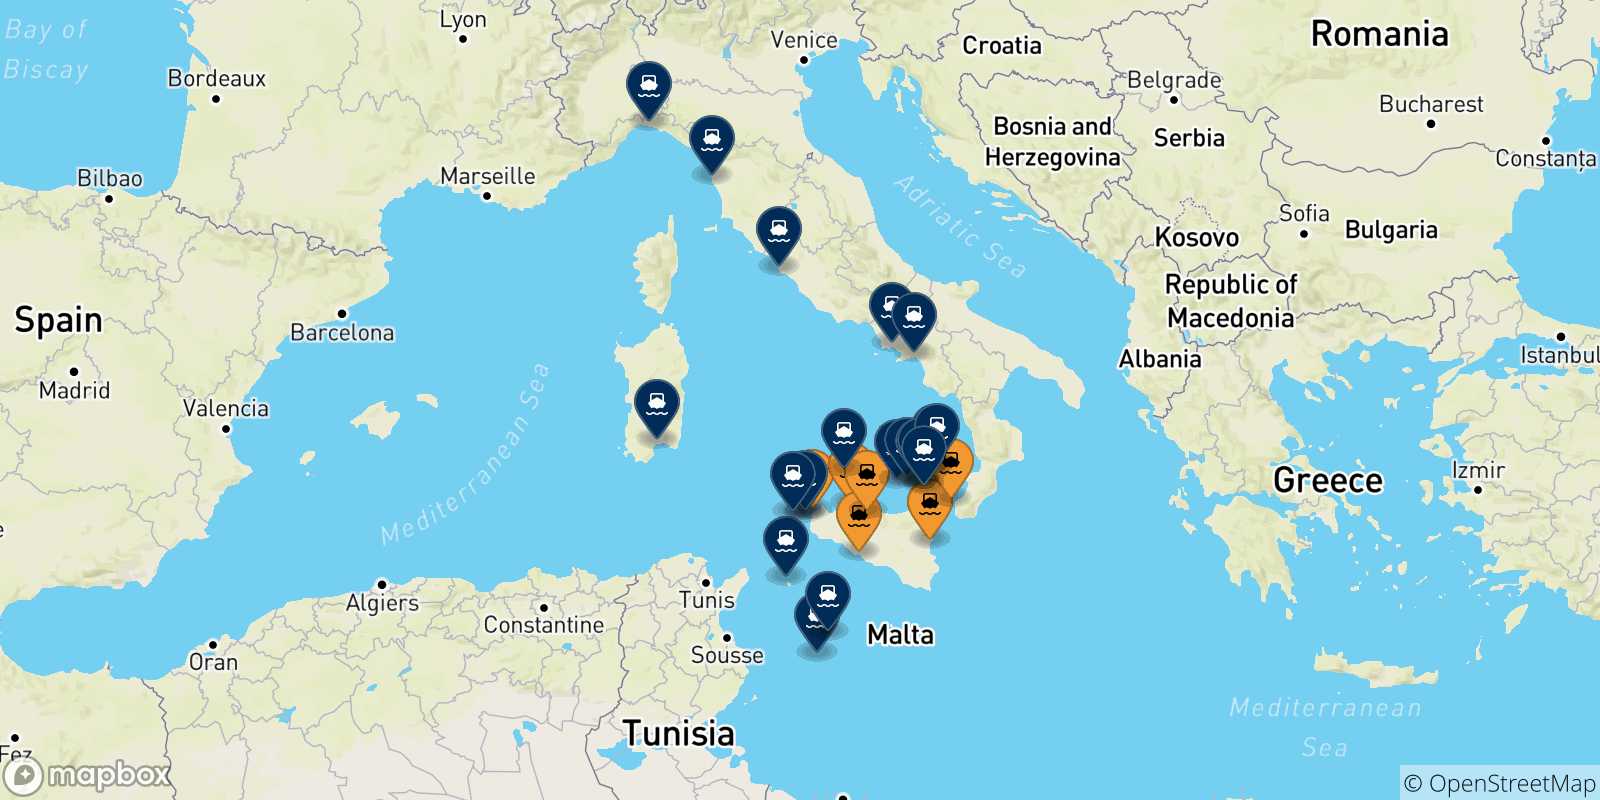 Mappa delle possibili rotte tra la Sicilia e l'Italia